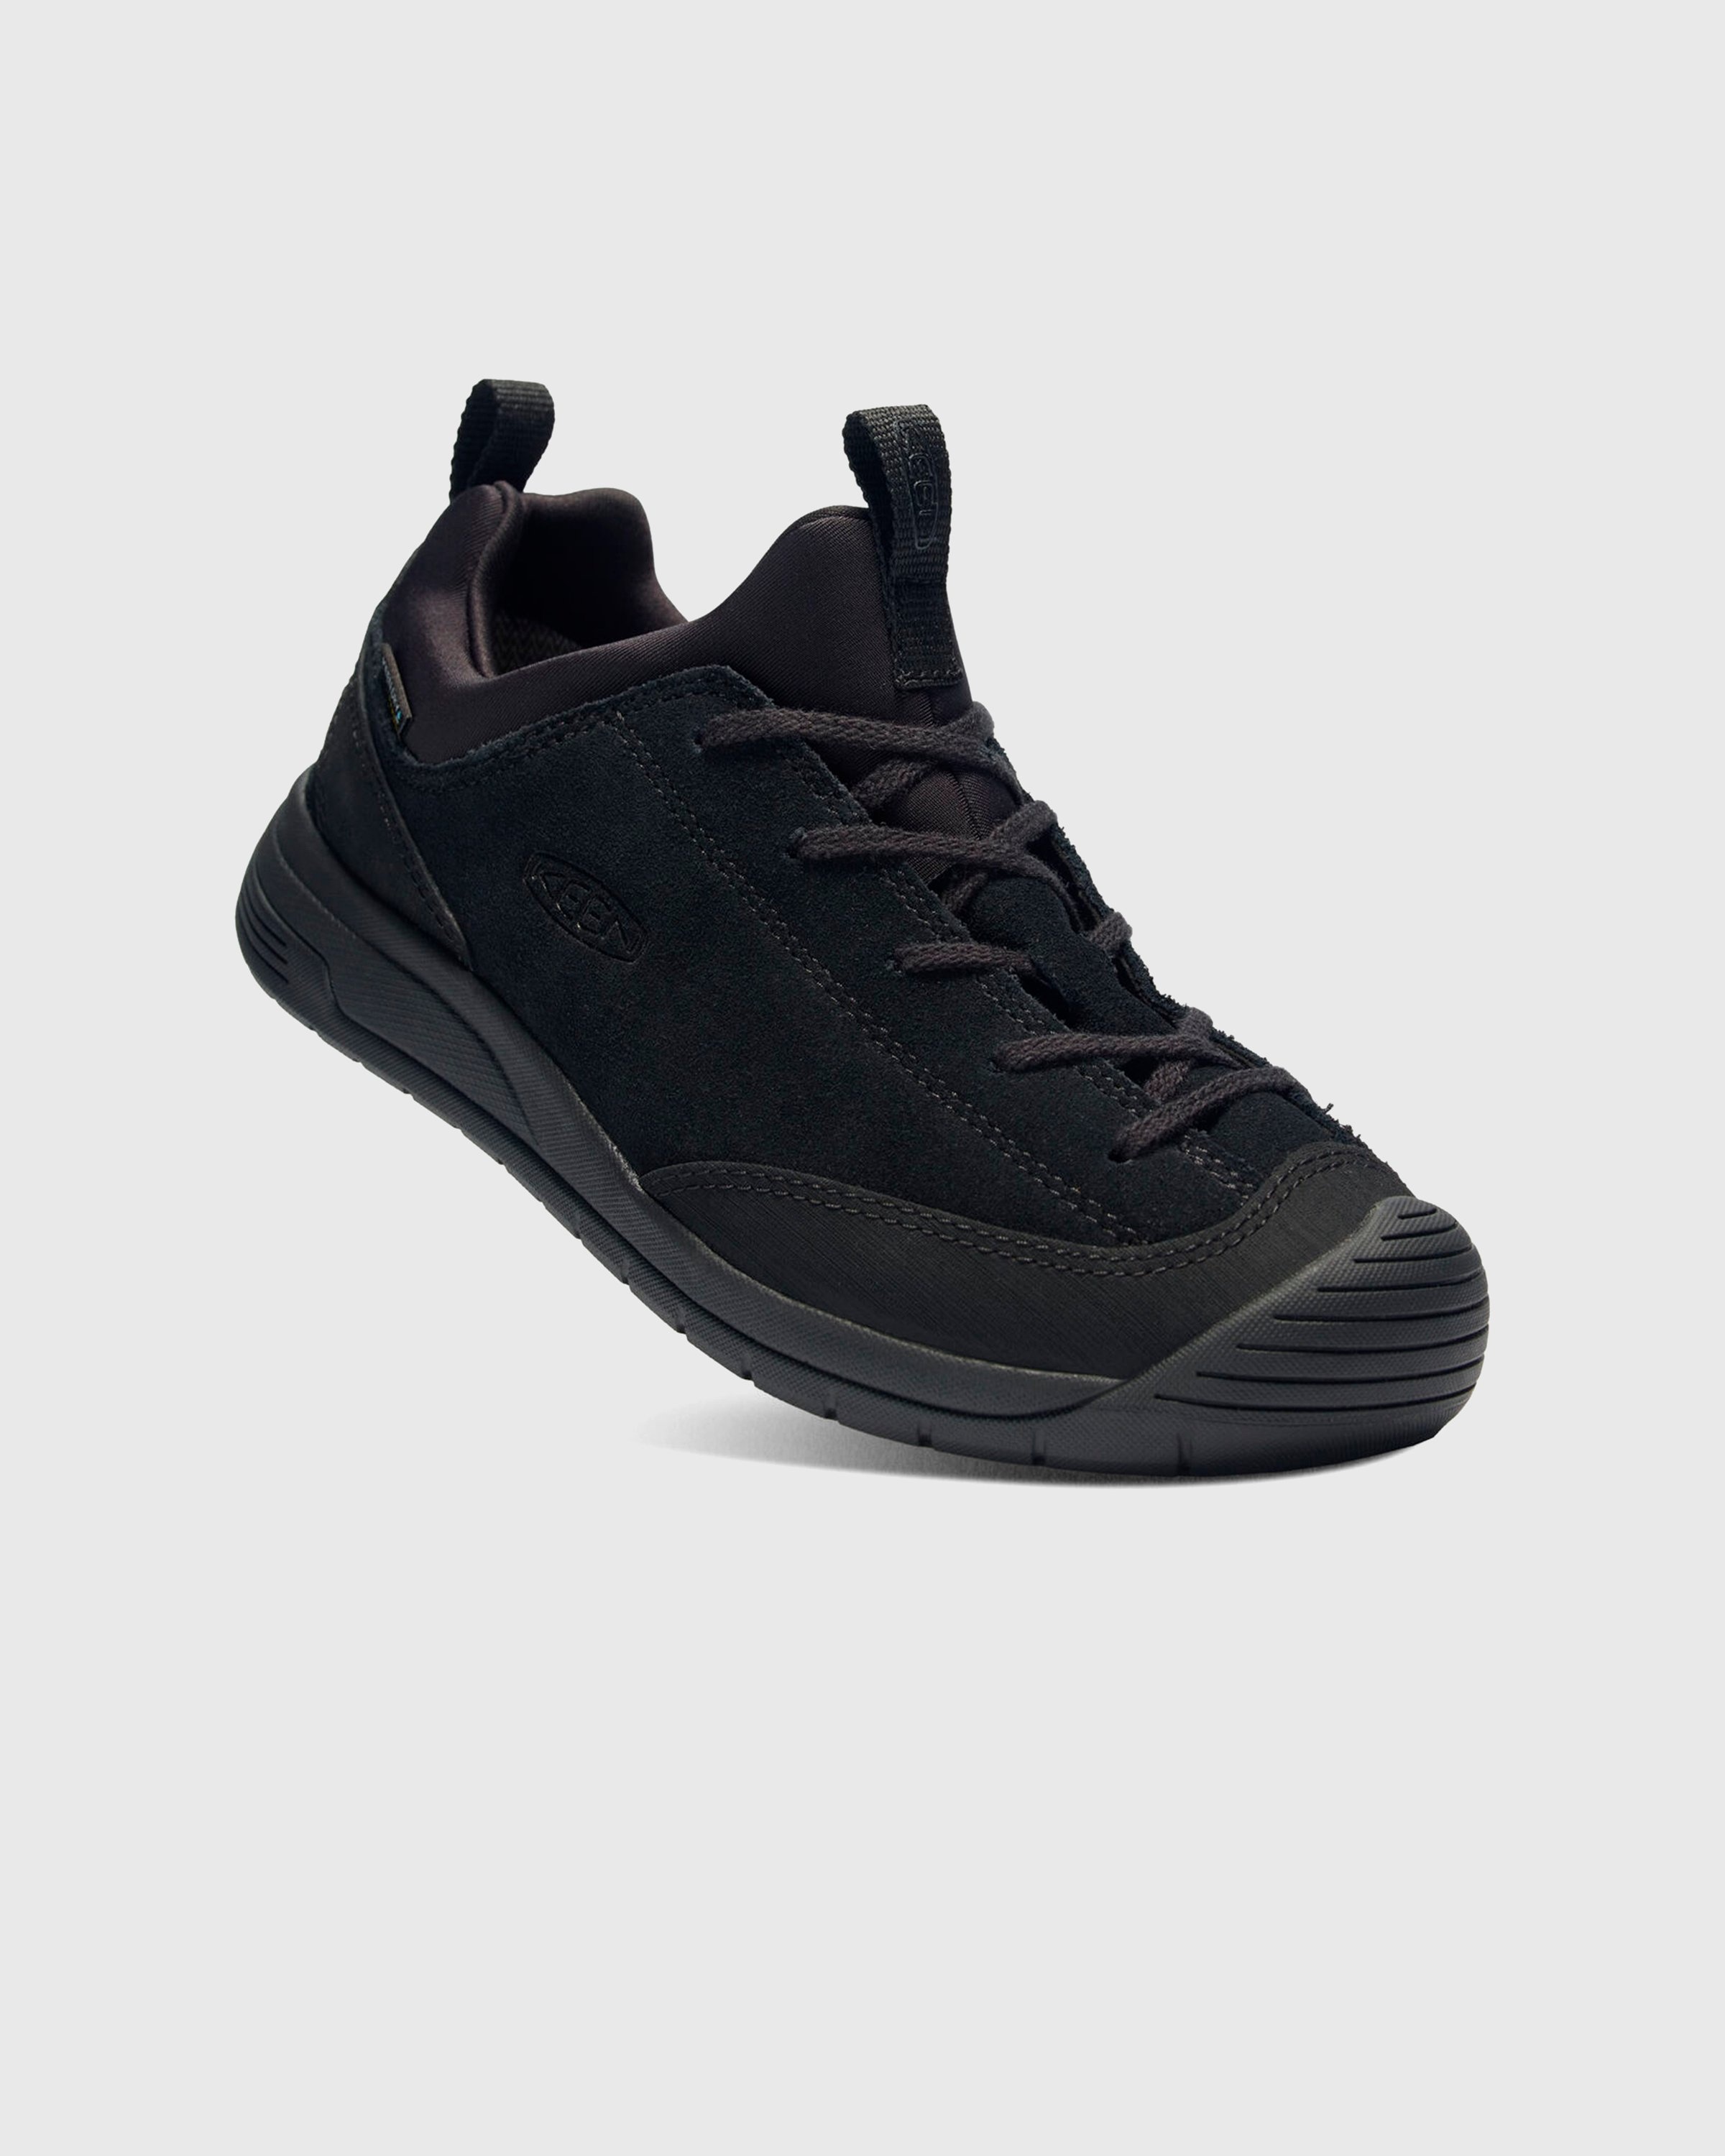 Keen x Engineered Garments – JASPER II EG MOC WP Black - Low Top Sneakers - Black - Image 2